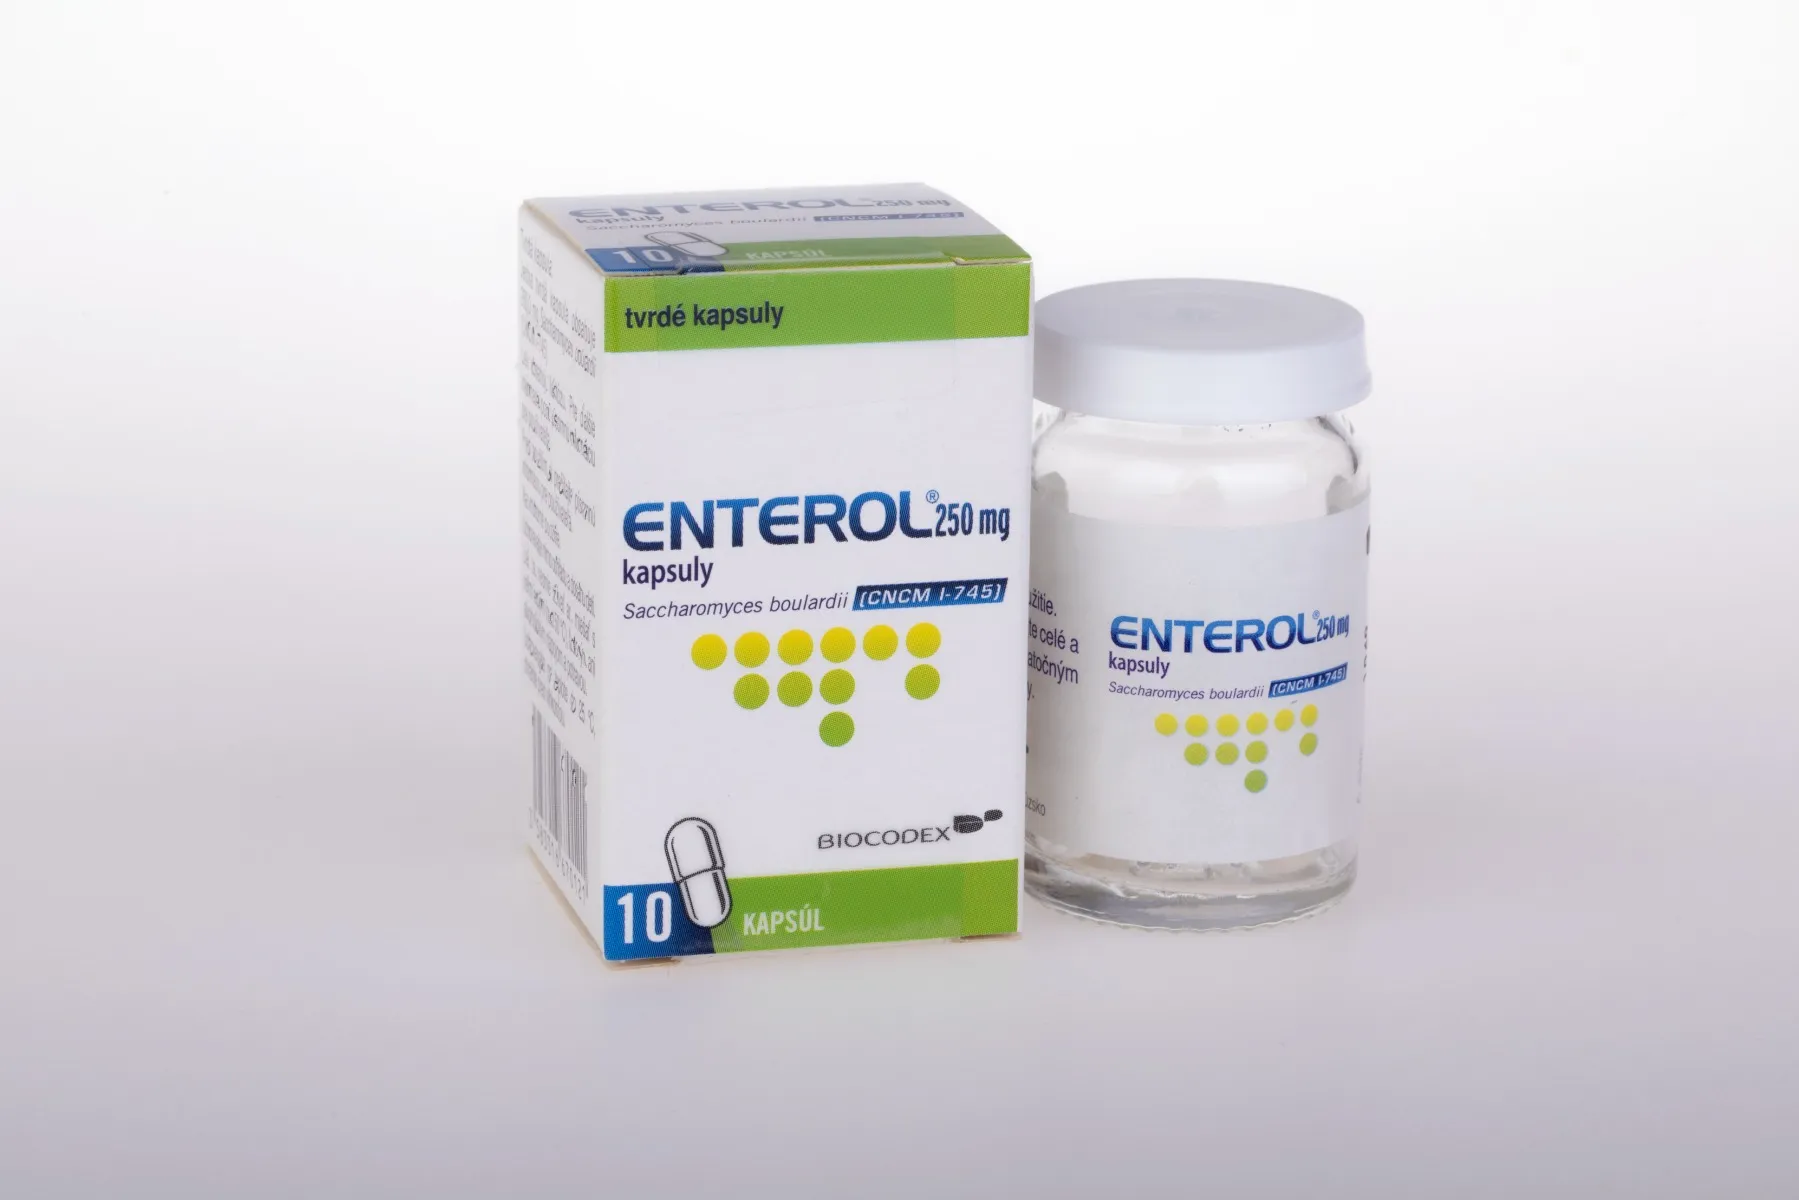 Enterol 250 mg kapsuly 1×10 cps, pomoc pri hnačkových stavoch